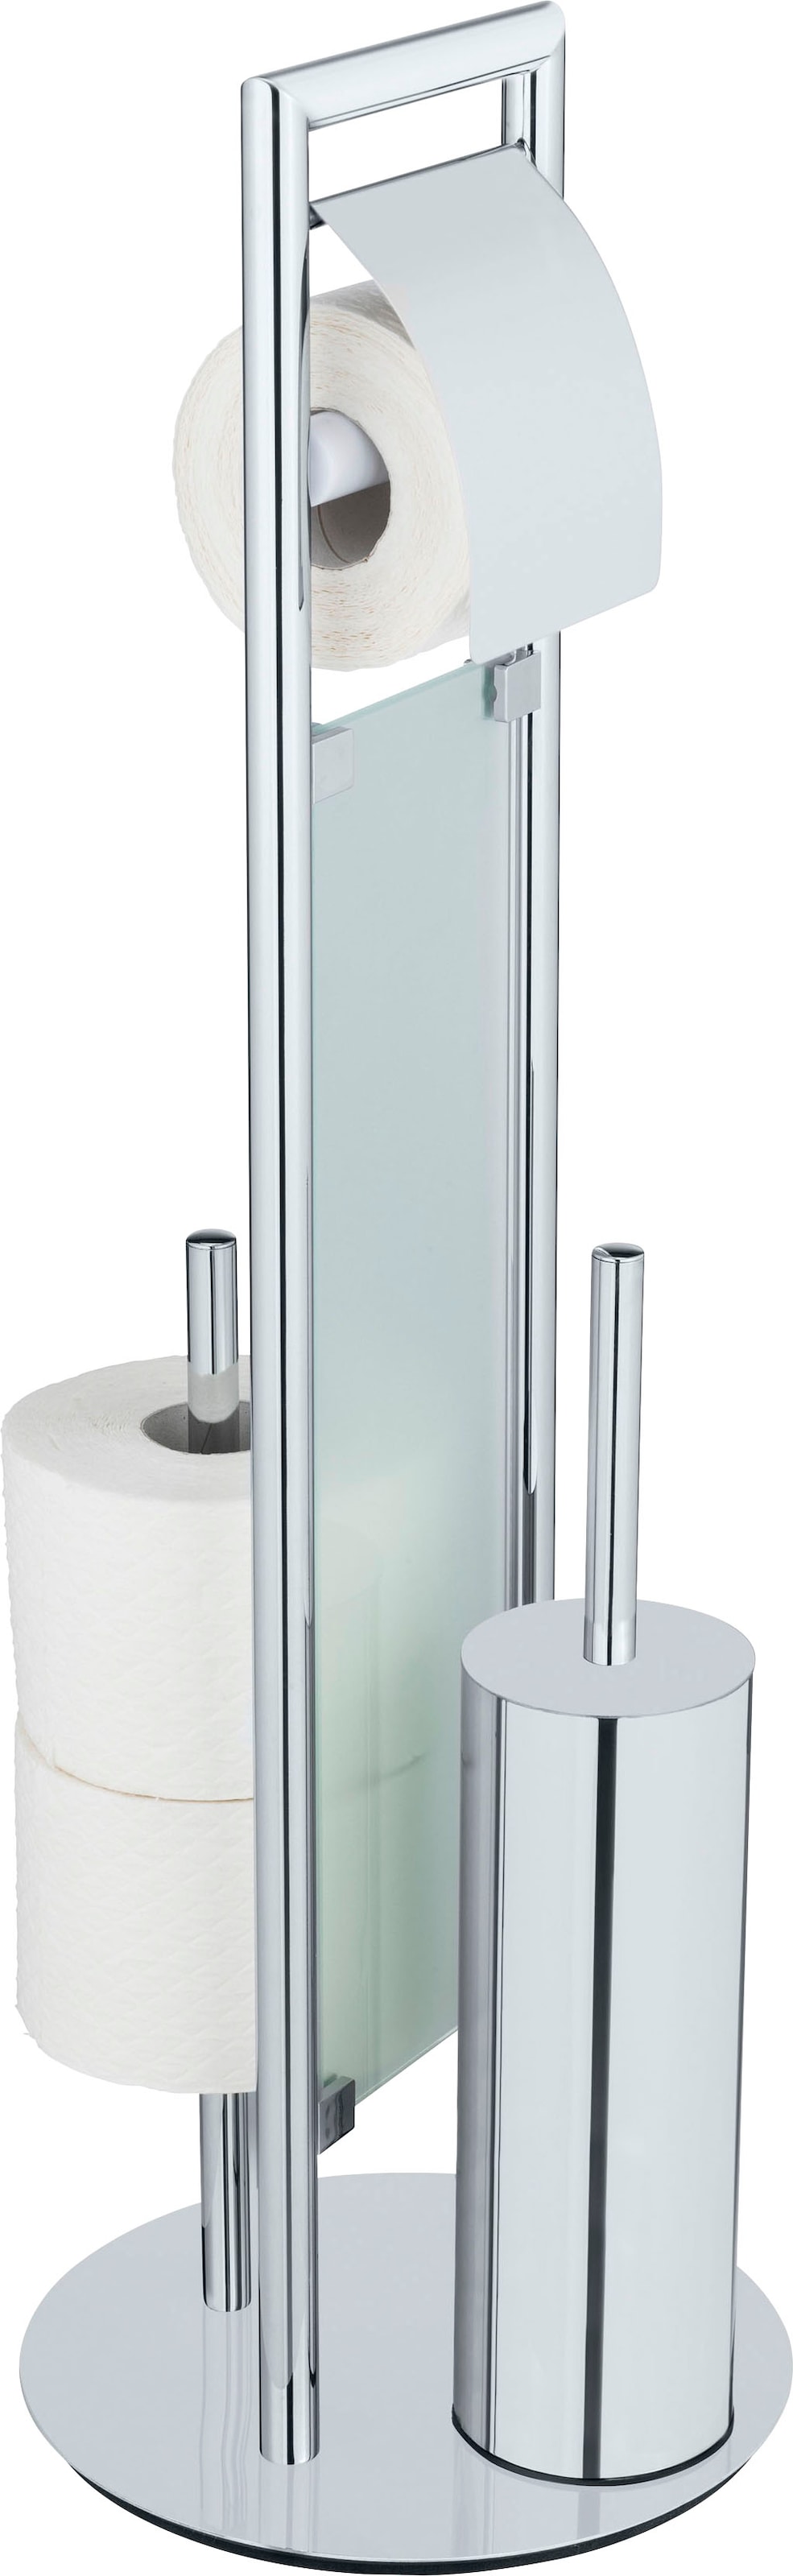 WC-Garnitur »Sulmona«, aus Edelstahl-Polypropylen, mit Silikon-Bürstenkopf